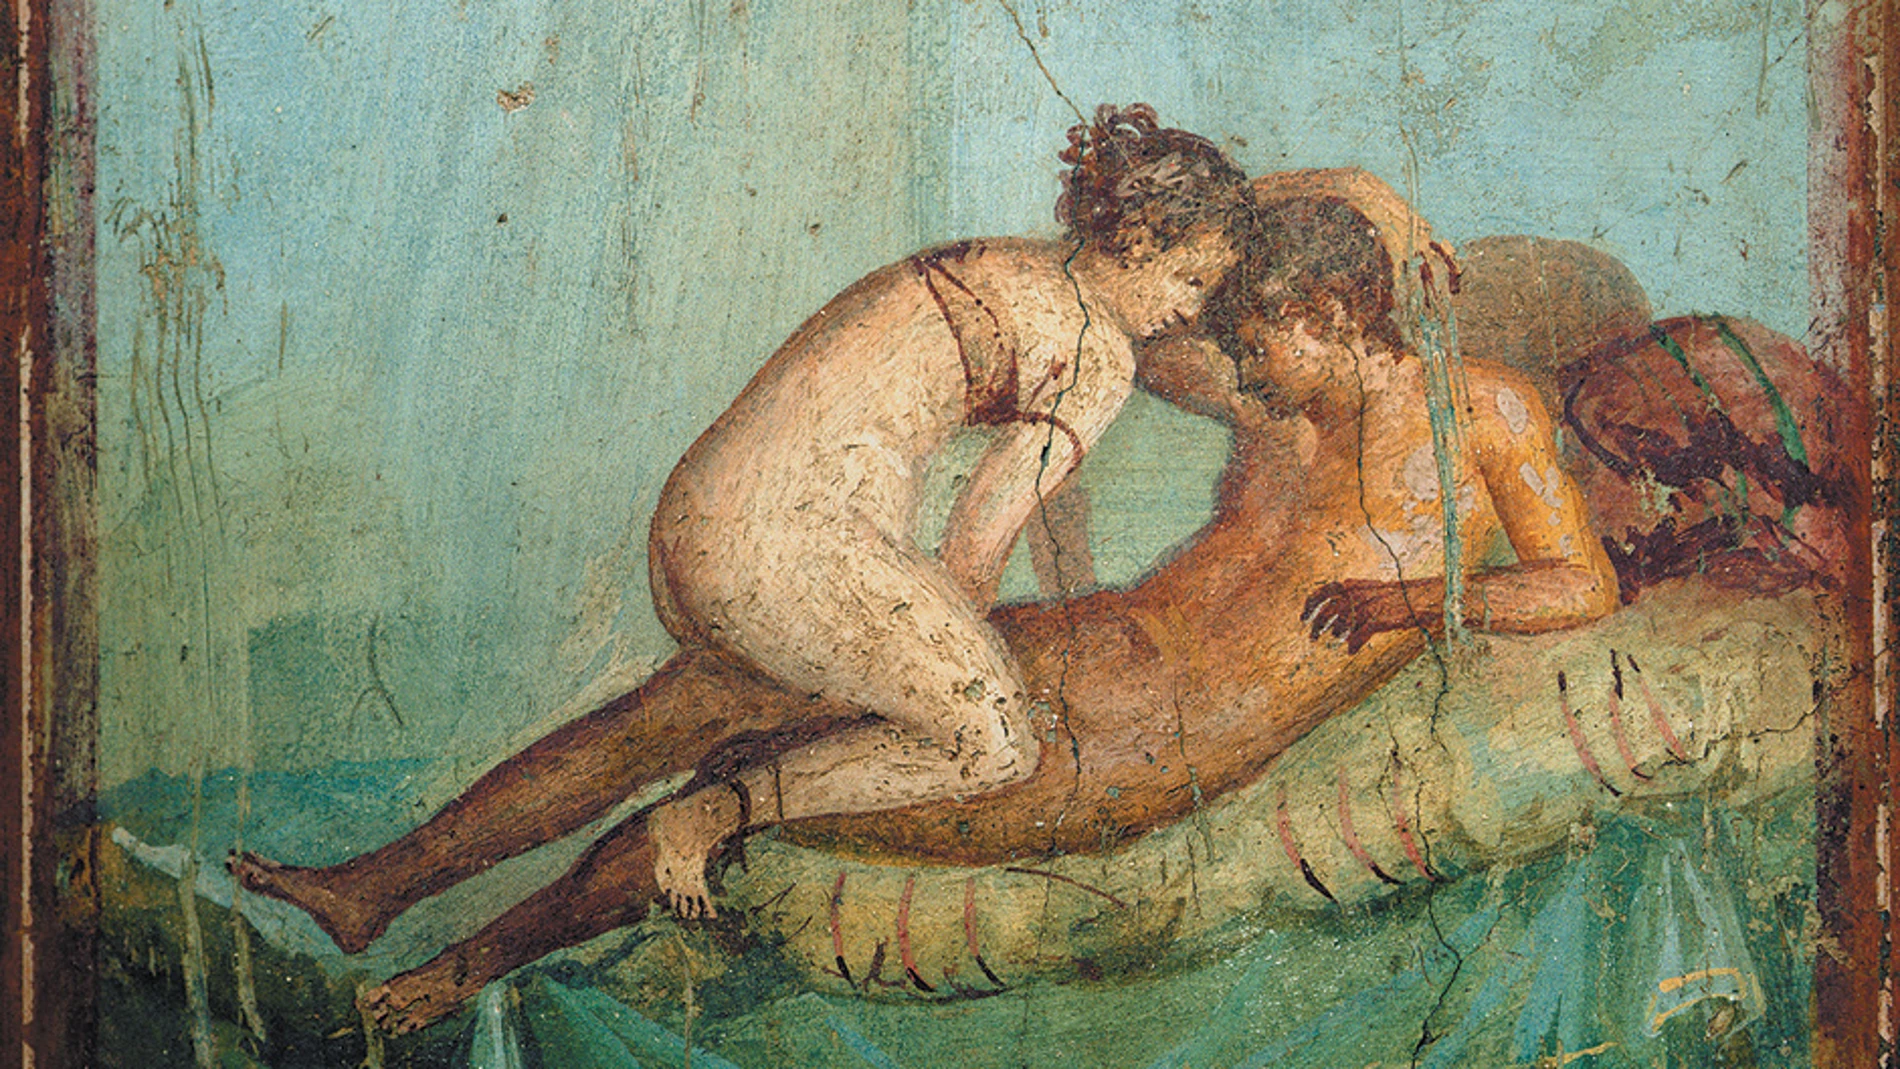 Pintura erótica romana de la Casa del Centenario, Pompeya